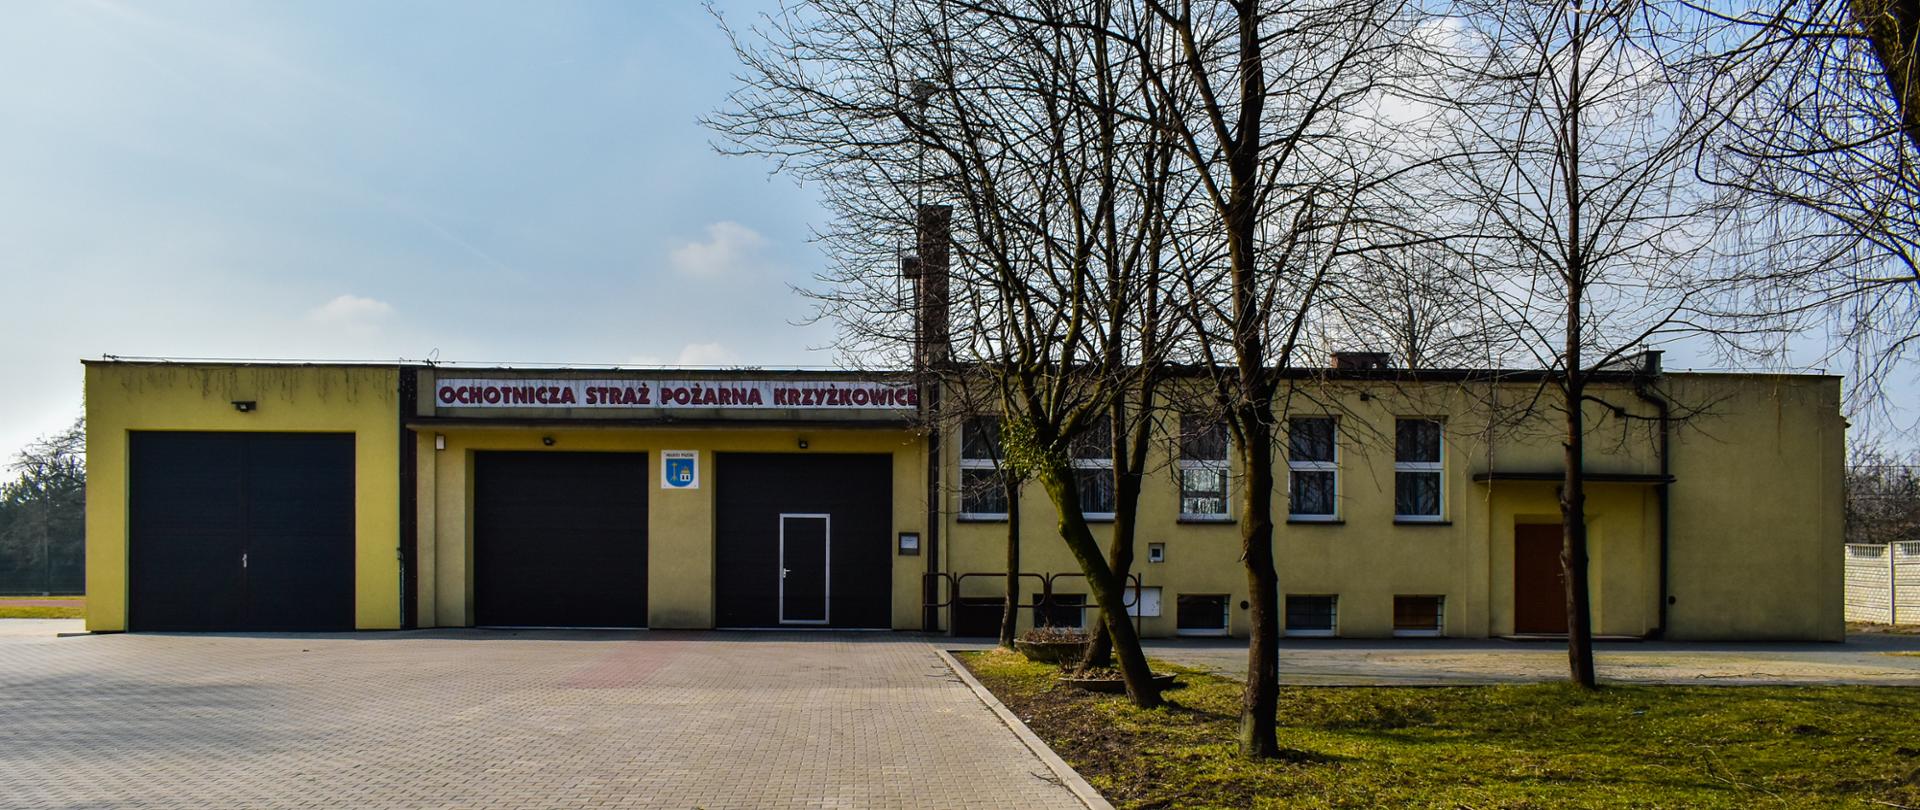 Zdjęcie prezentuje budynek jednostki OSP Krzyżkowice